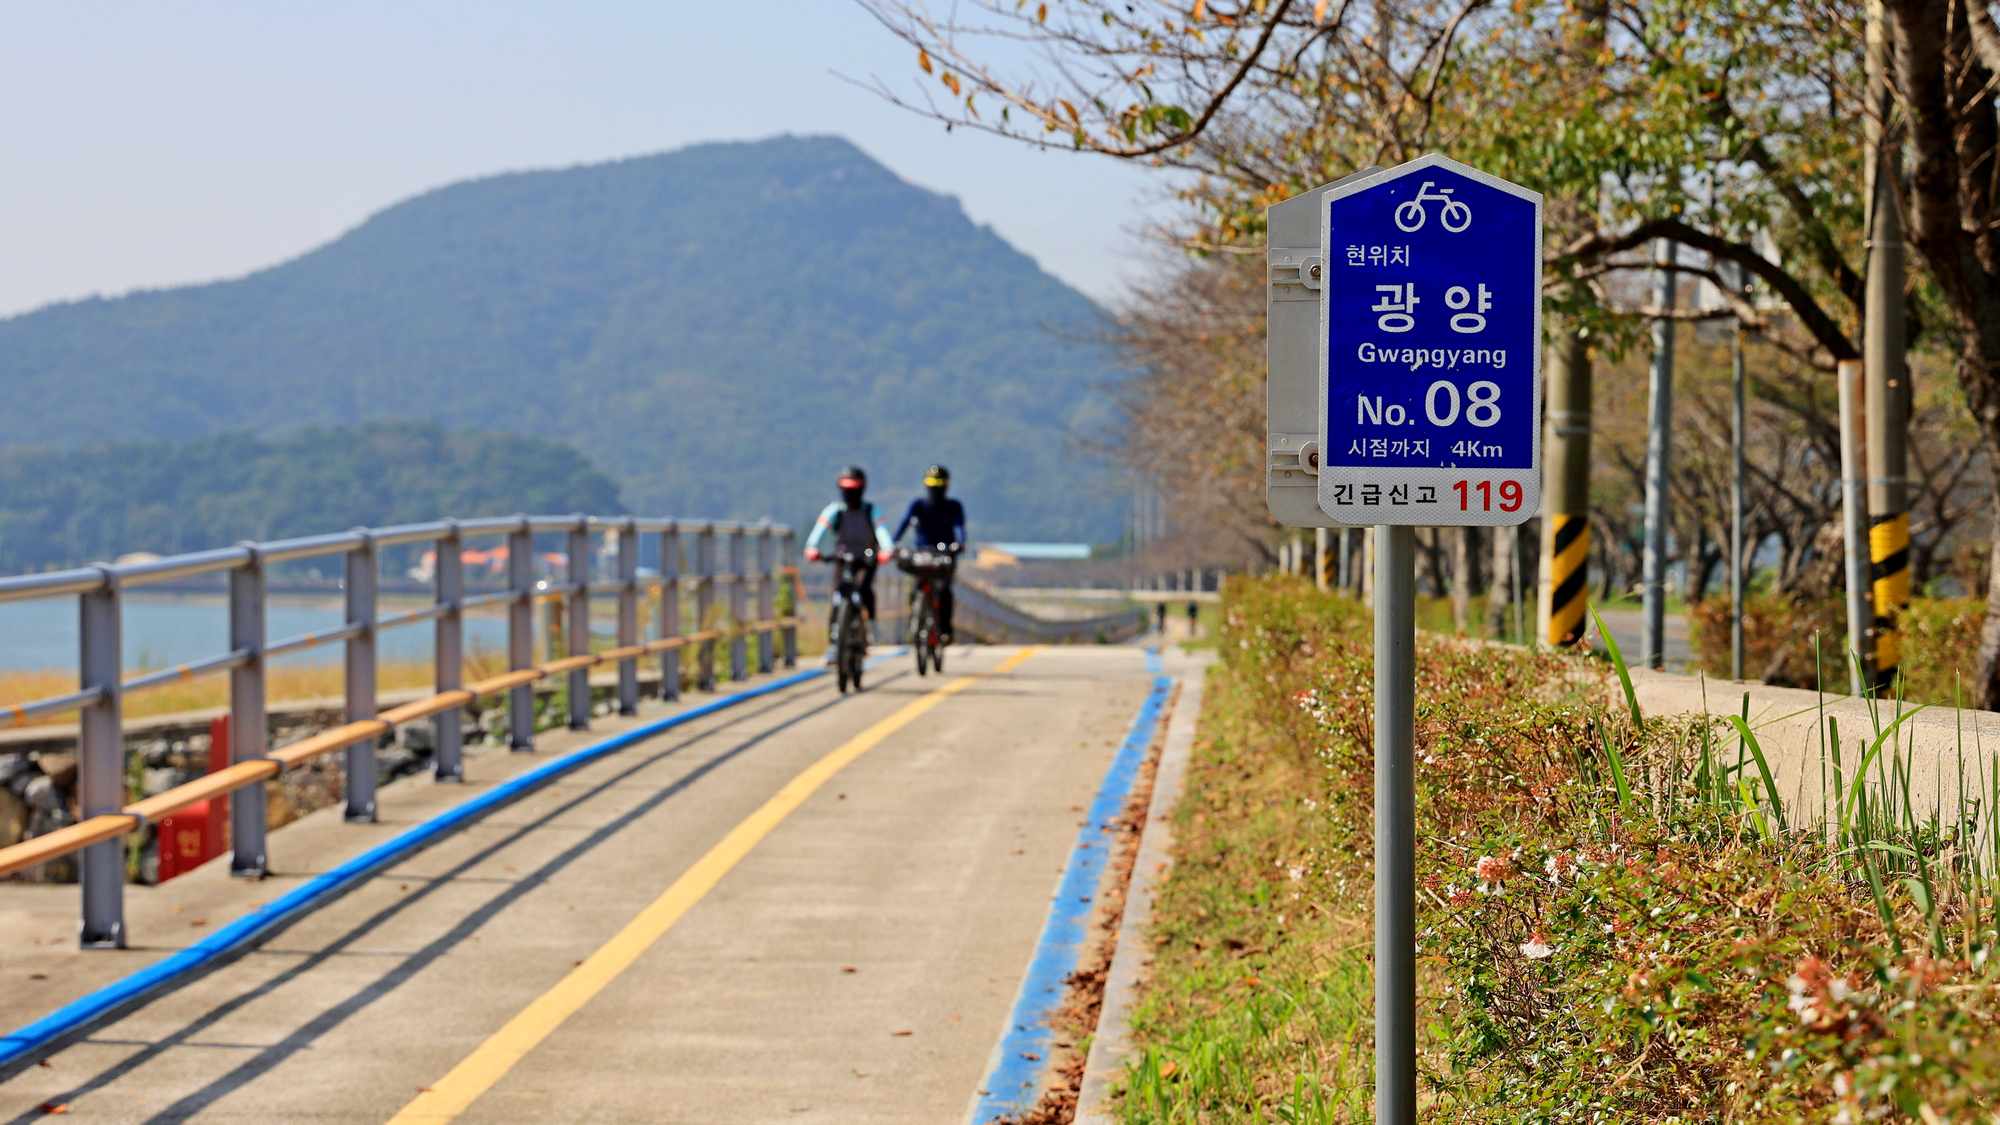 Seomjingang Bike Path - Gokseong Gwangyang - Bike Marker Sign near Baealdo Waterfront Park in Gwangyang